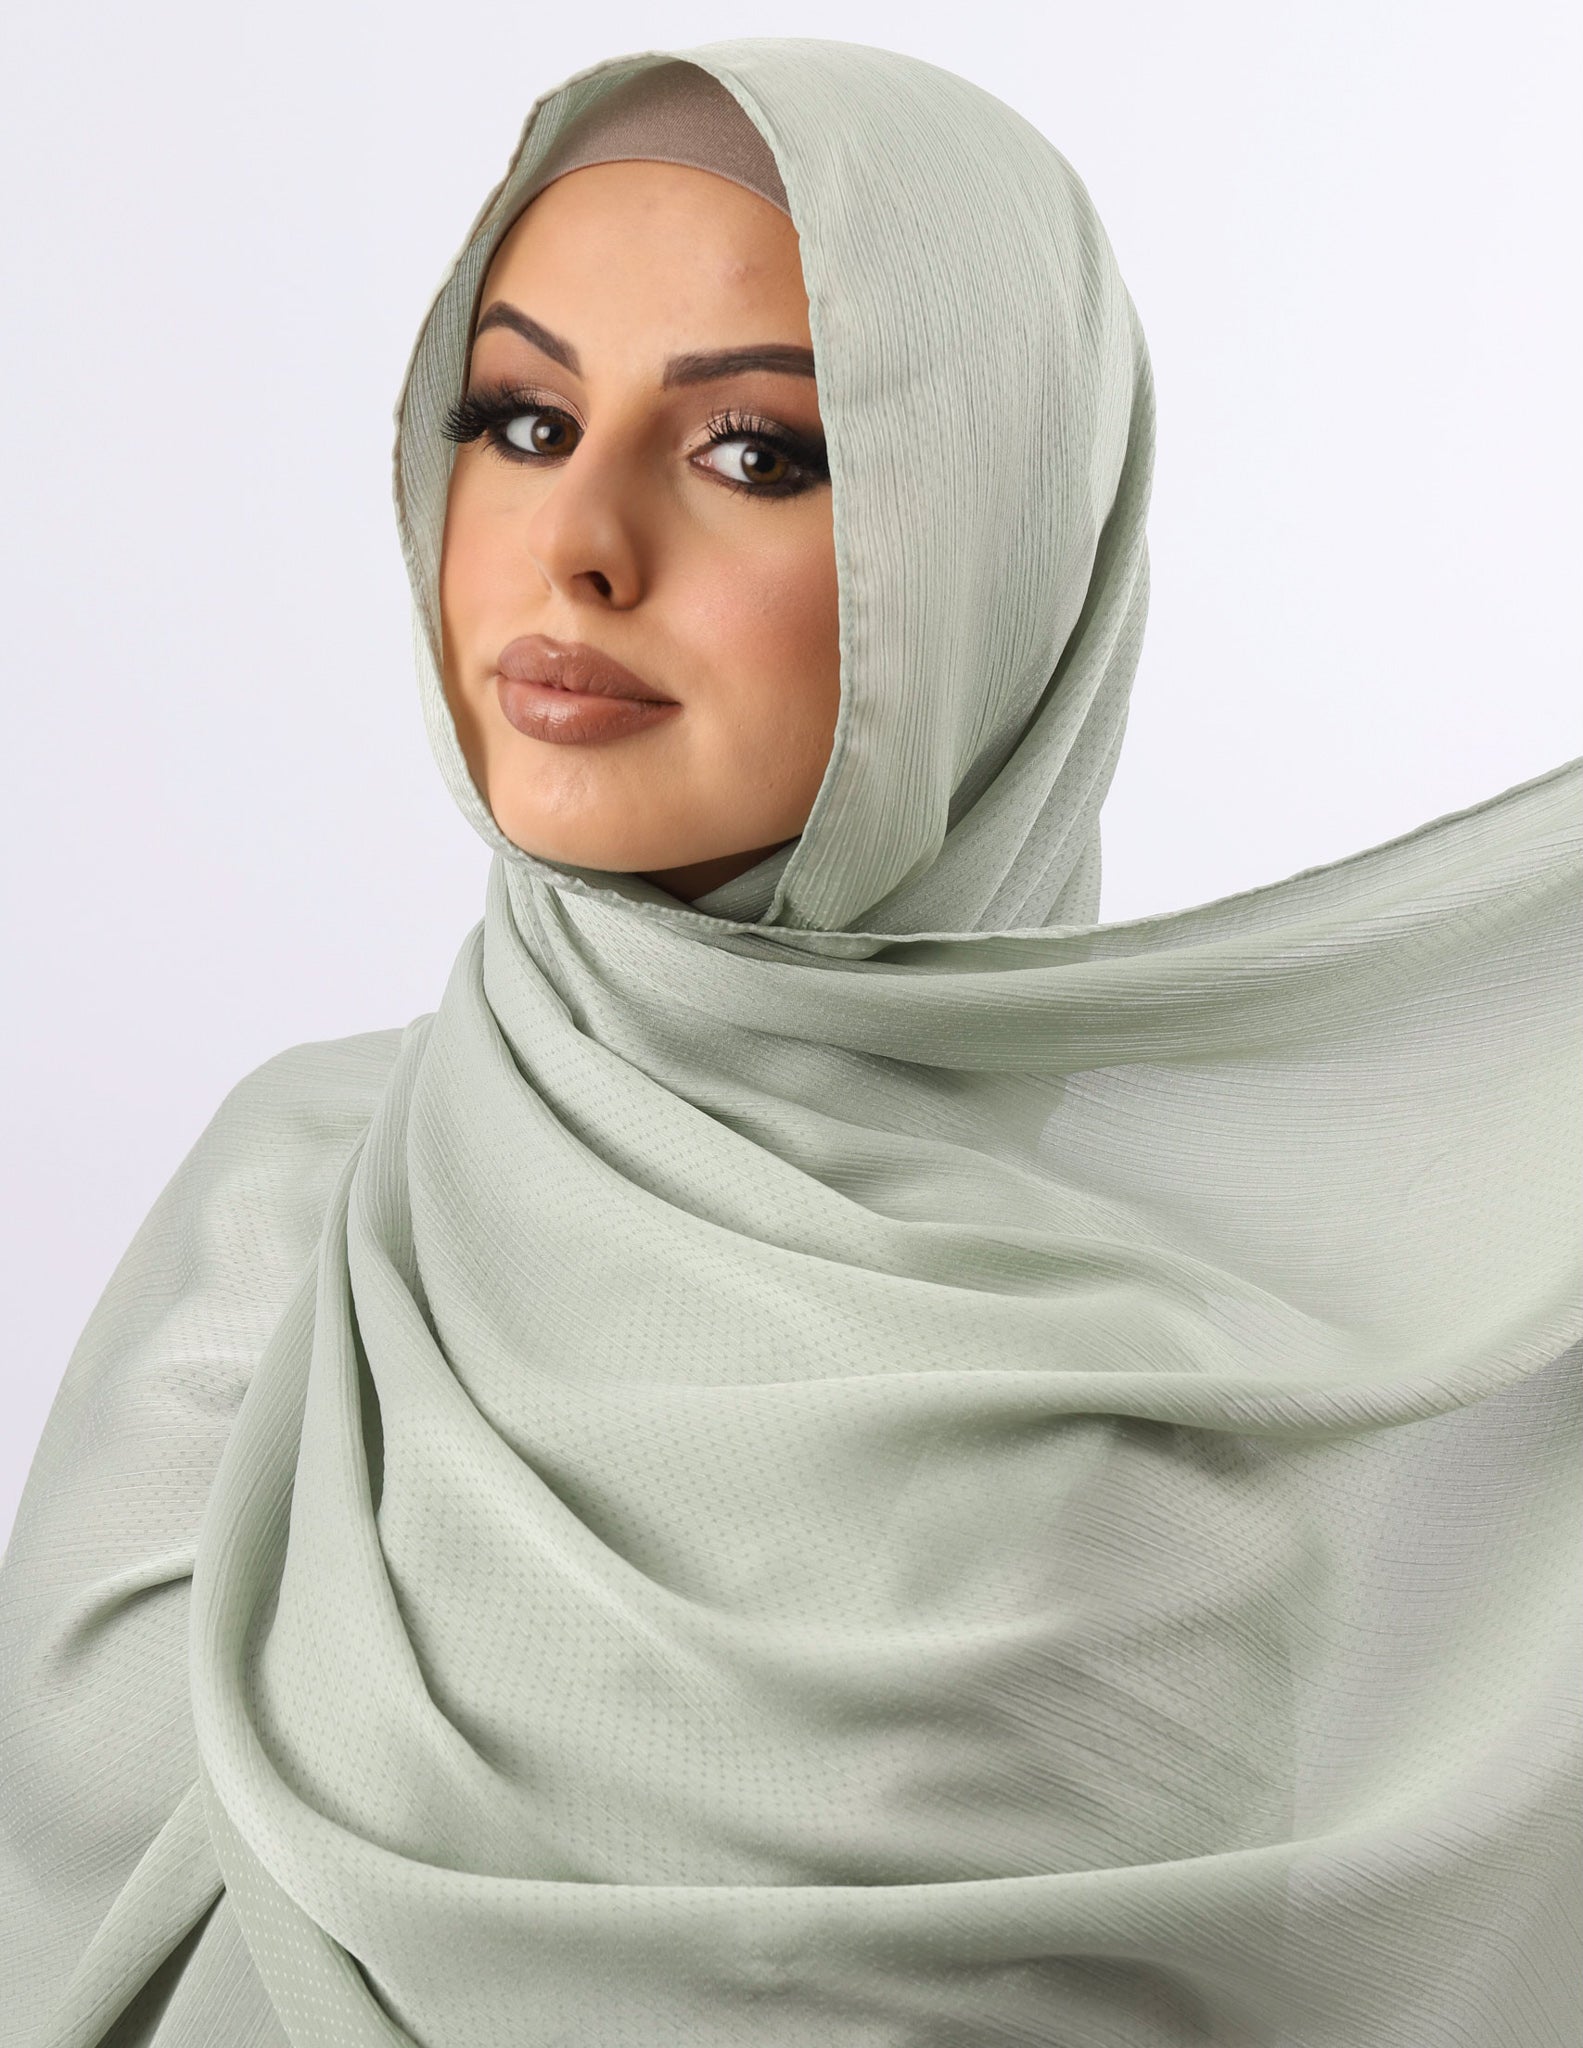 SC1003RMint-shawl-hijab